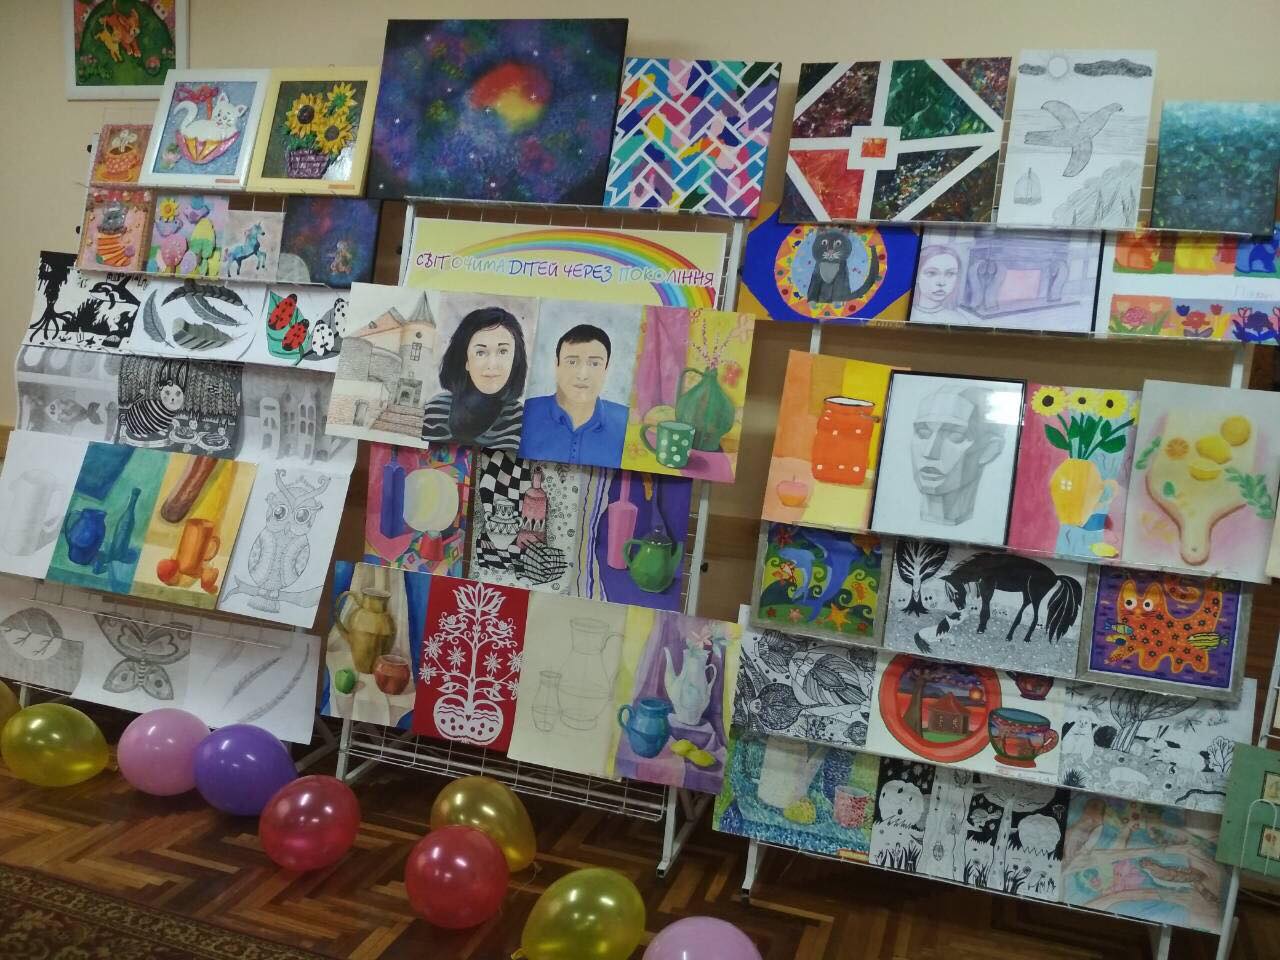 «Світ очима дітей через покоління» – під такою назвою організували виставку дитячих малюнків у Науковій бібліотеці Мукачівського державного університету. 